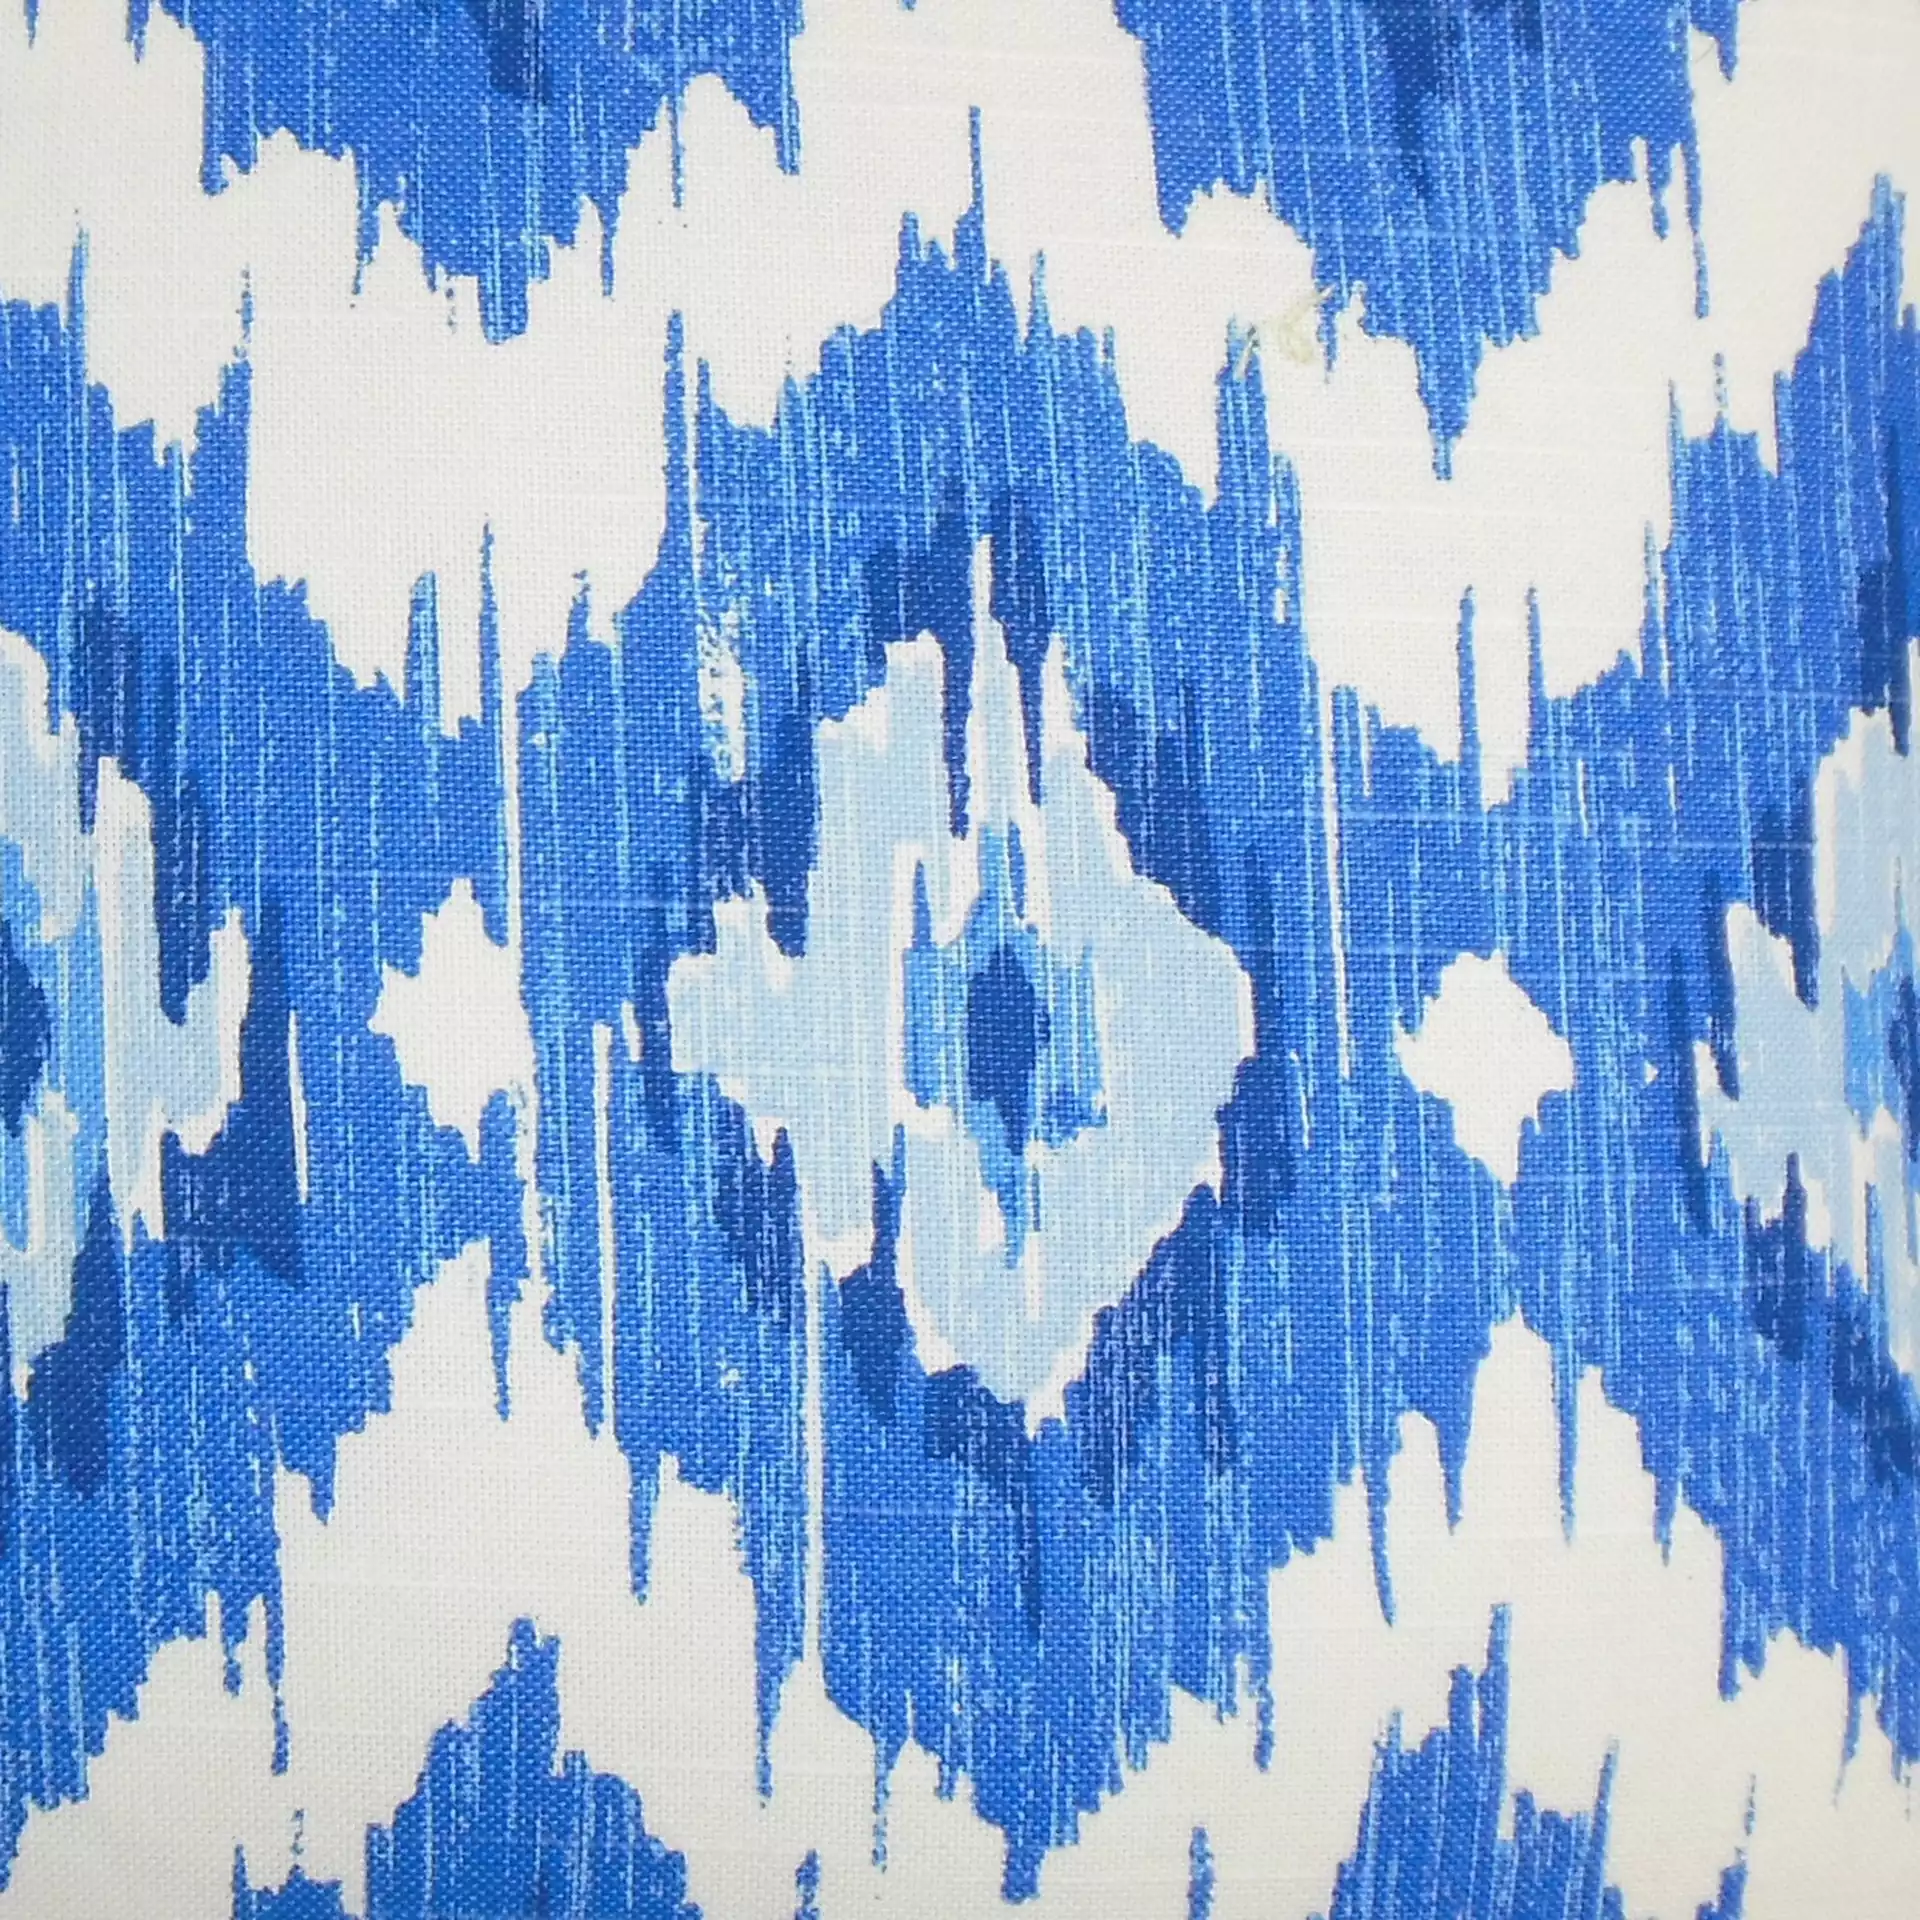 Ulrike Ikat Pillow Blue - 12" x 18"- high-fiber polyester pillow insert